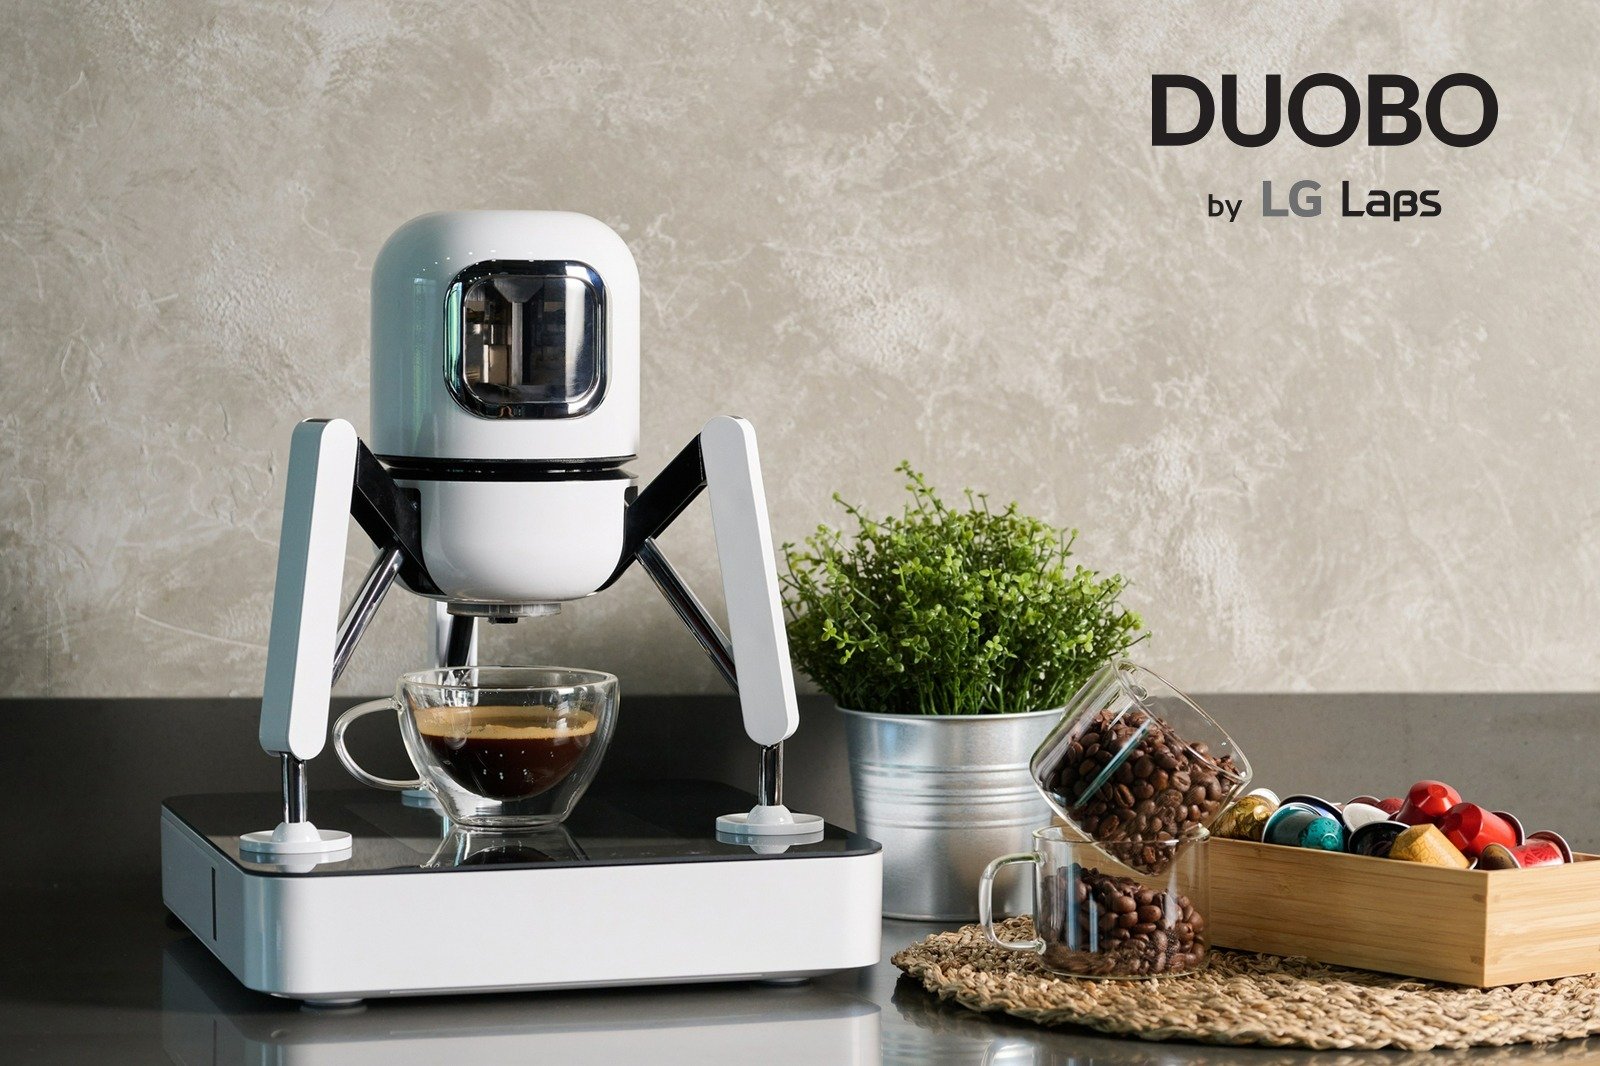 Nowy wymiar parzenia kawy: LG prezentuje ekspres DUOBO by LG Labs